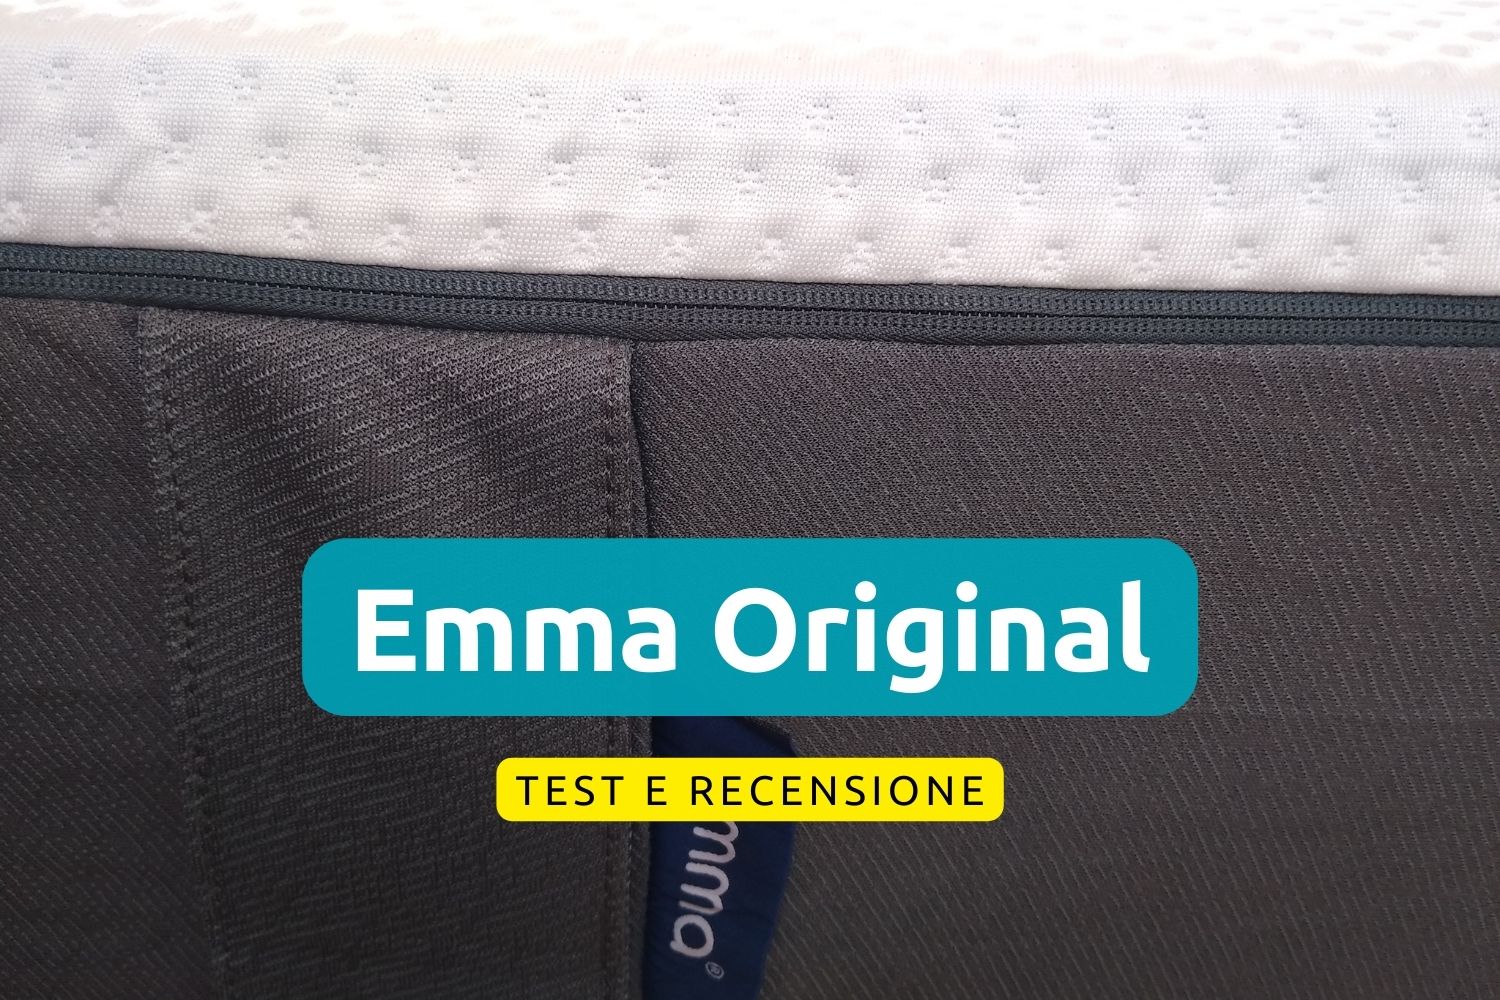 Materasso Emma Original, test e recensione